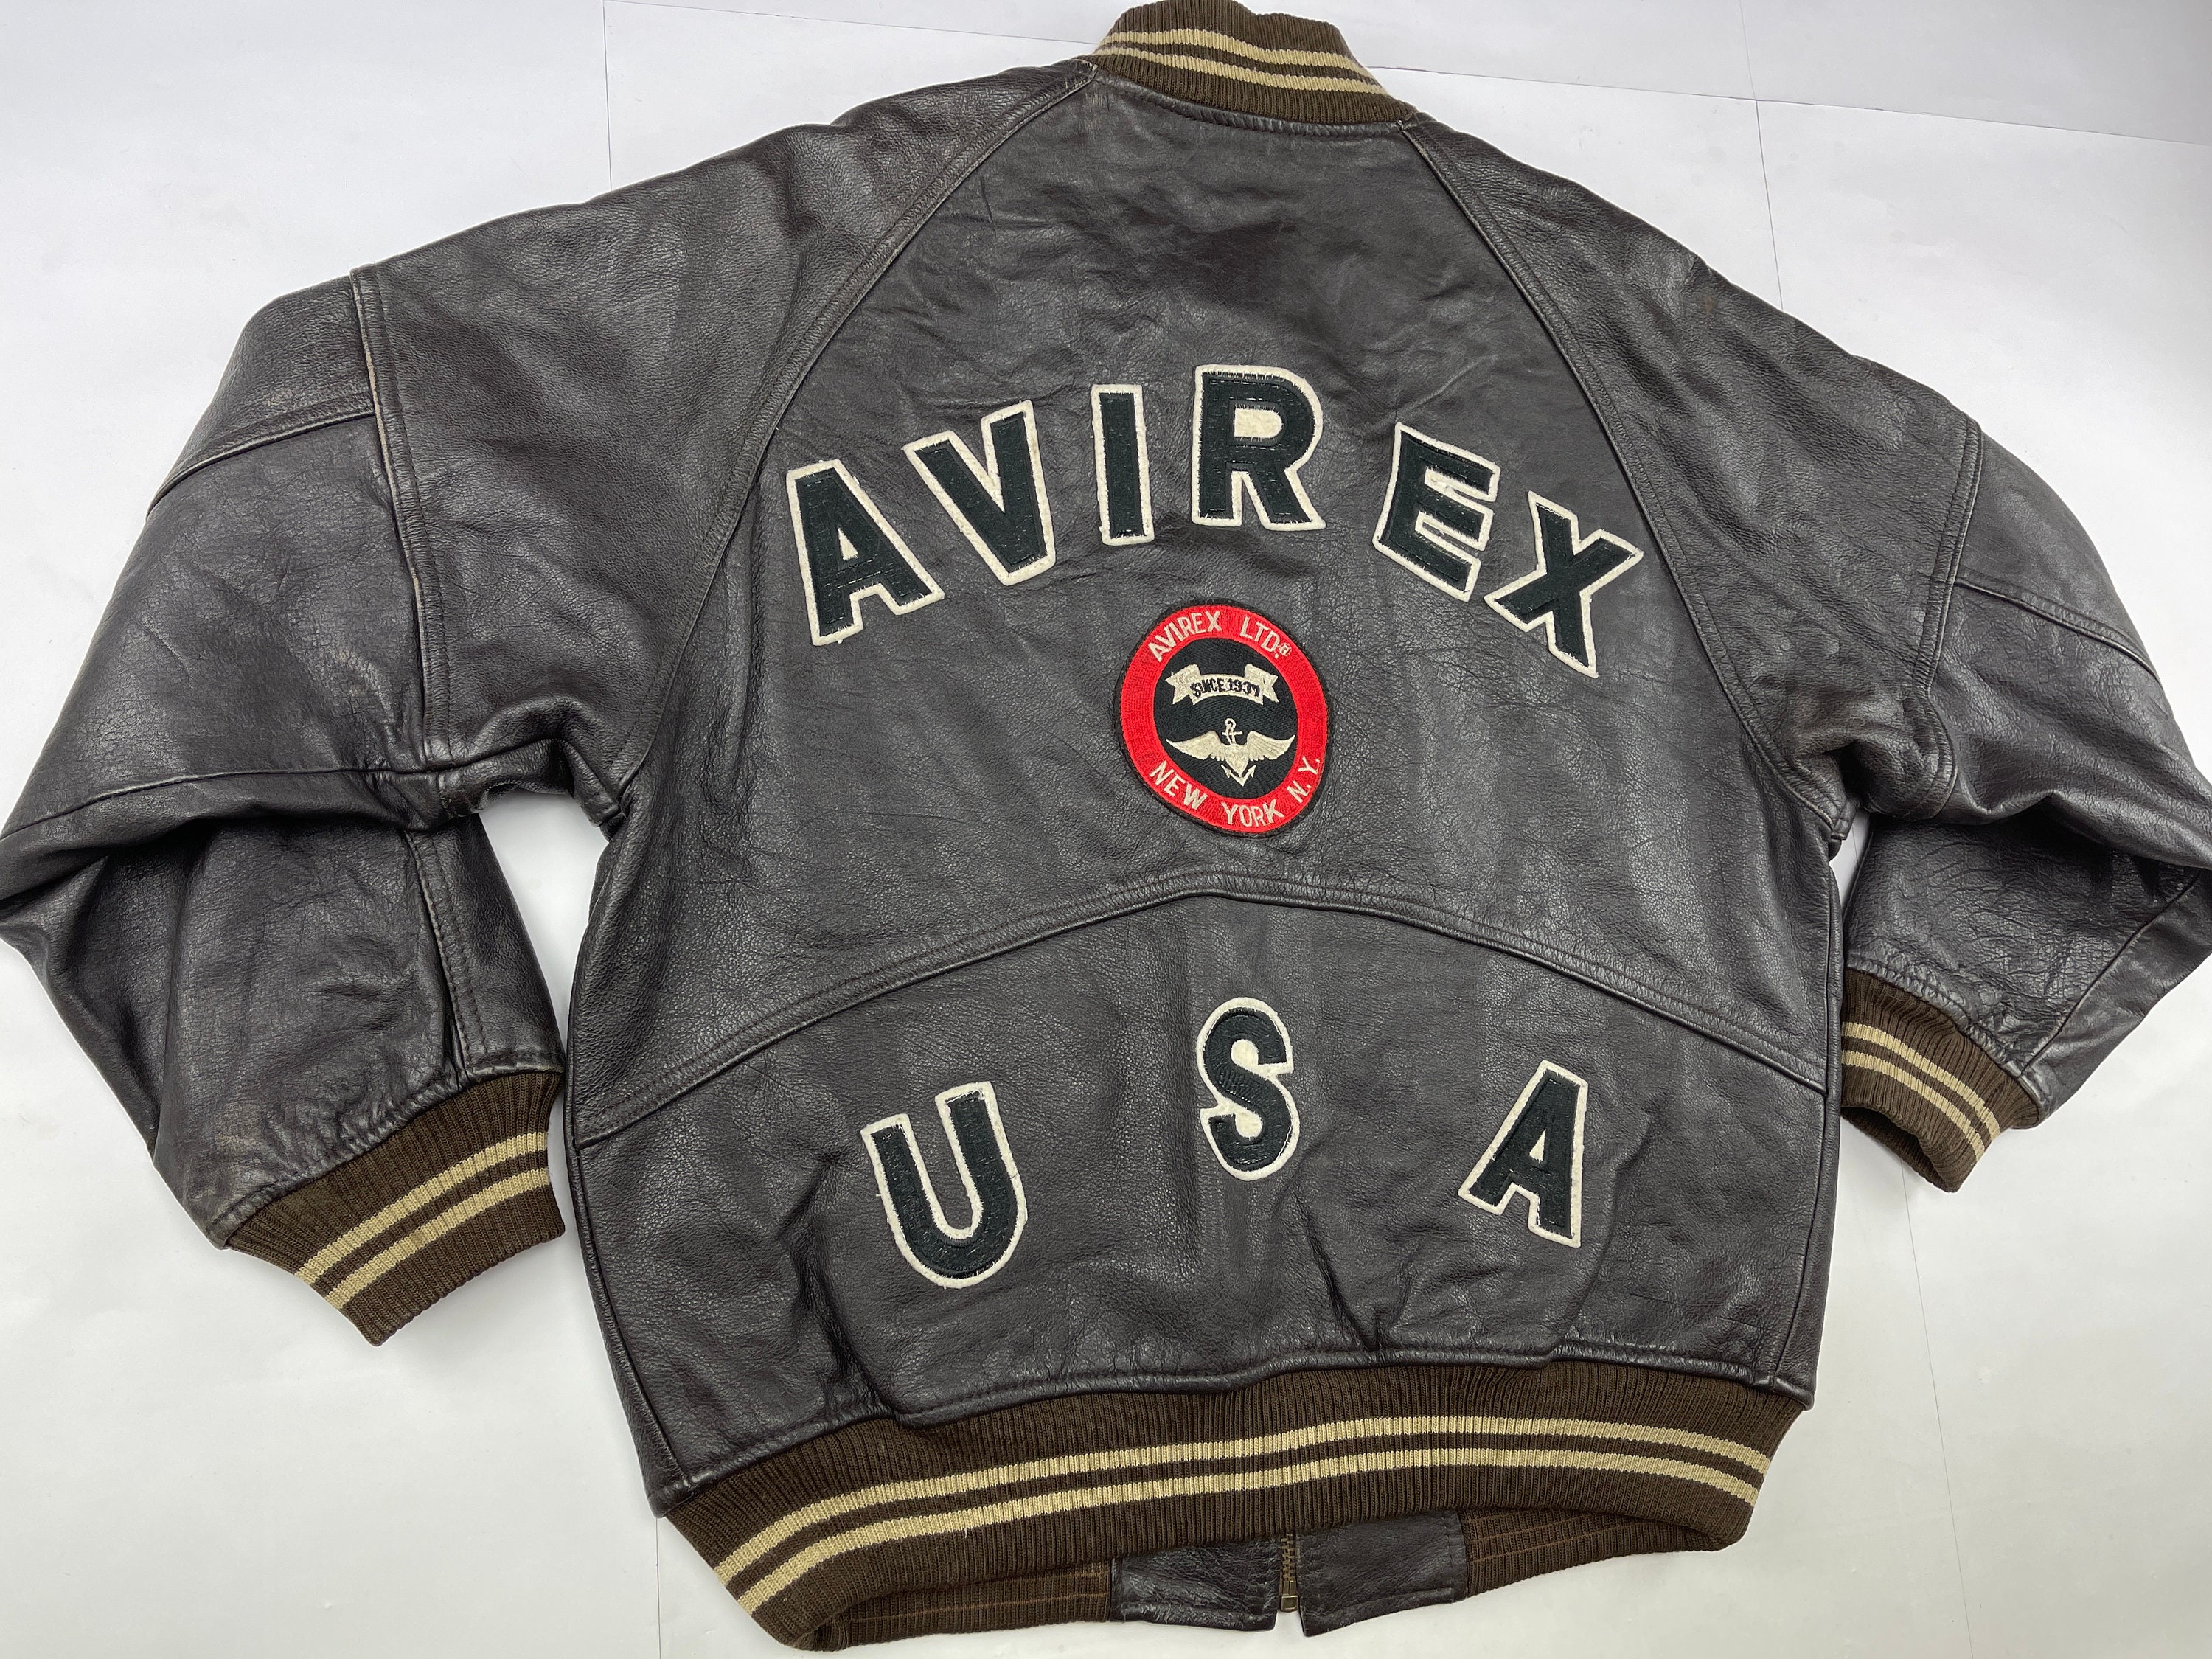 Vintage Avirex Usa Leather Jacket Avirex Us Air Force US Army Australia ...